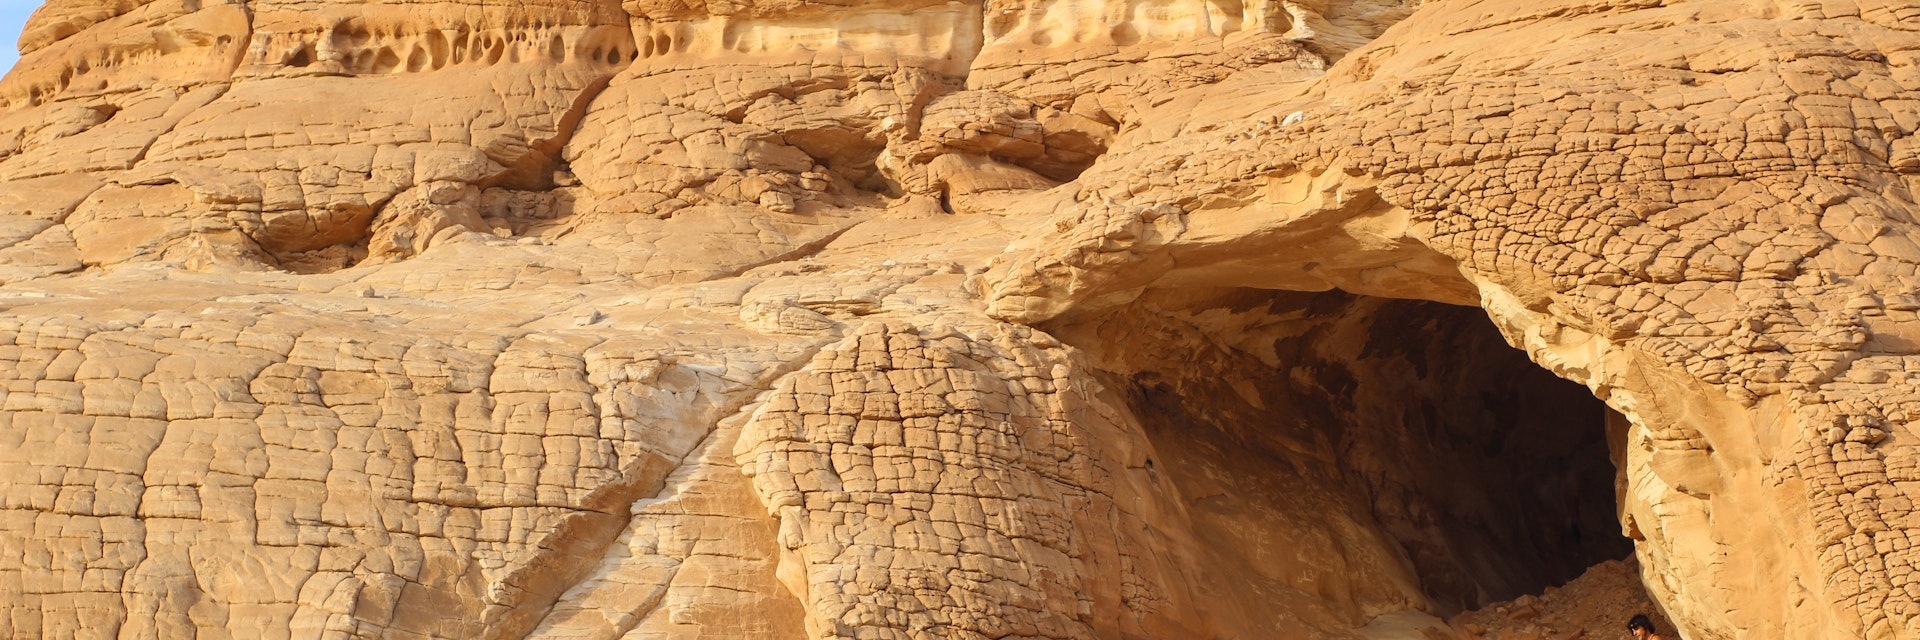 Gilf Kebir Plateau in Egypt.